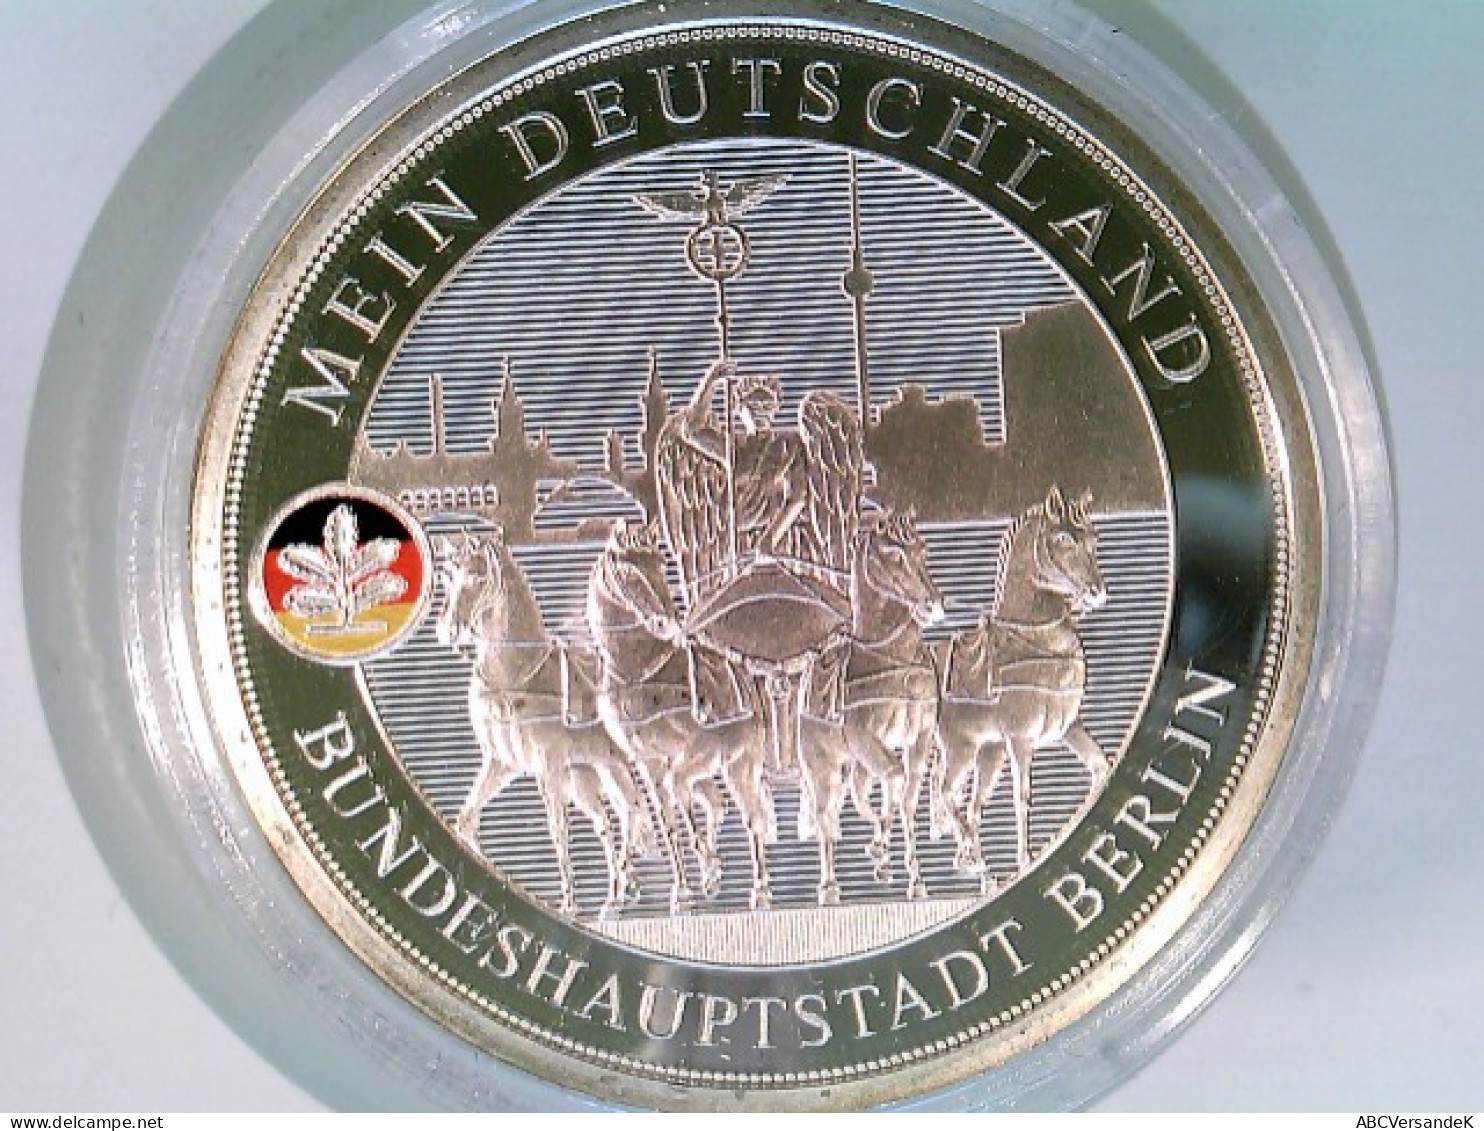 Münze/Medaille, Bundeshauptstadt Berlin, Sammlermünze 2016, Silber 333 Mit Farbdruck - Numismatique